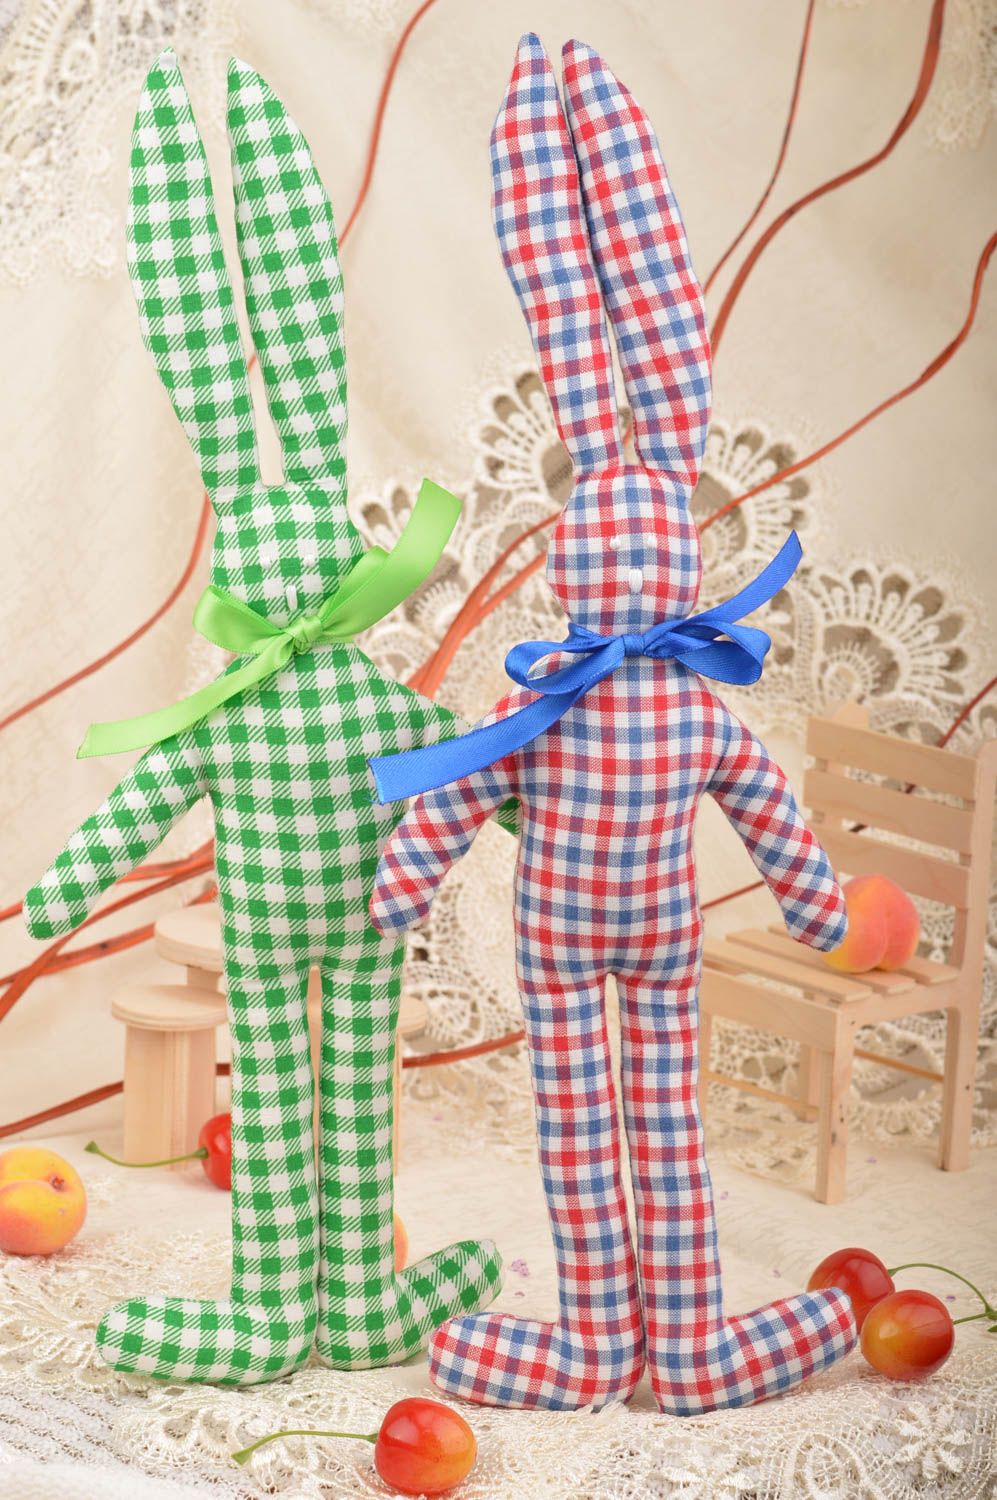 Интерьерные куклы зайцы ручной работы из хлопка комплект 2 шт для детей и декора фото 1